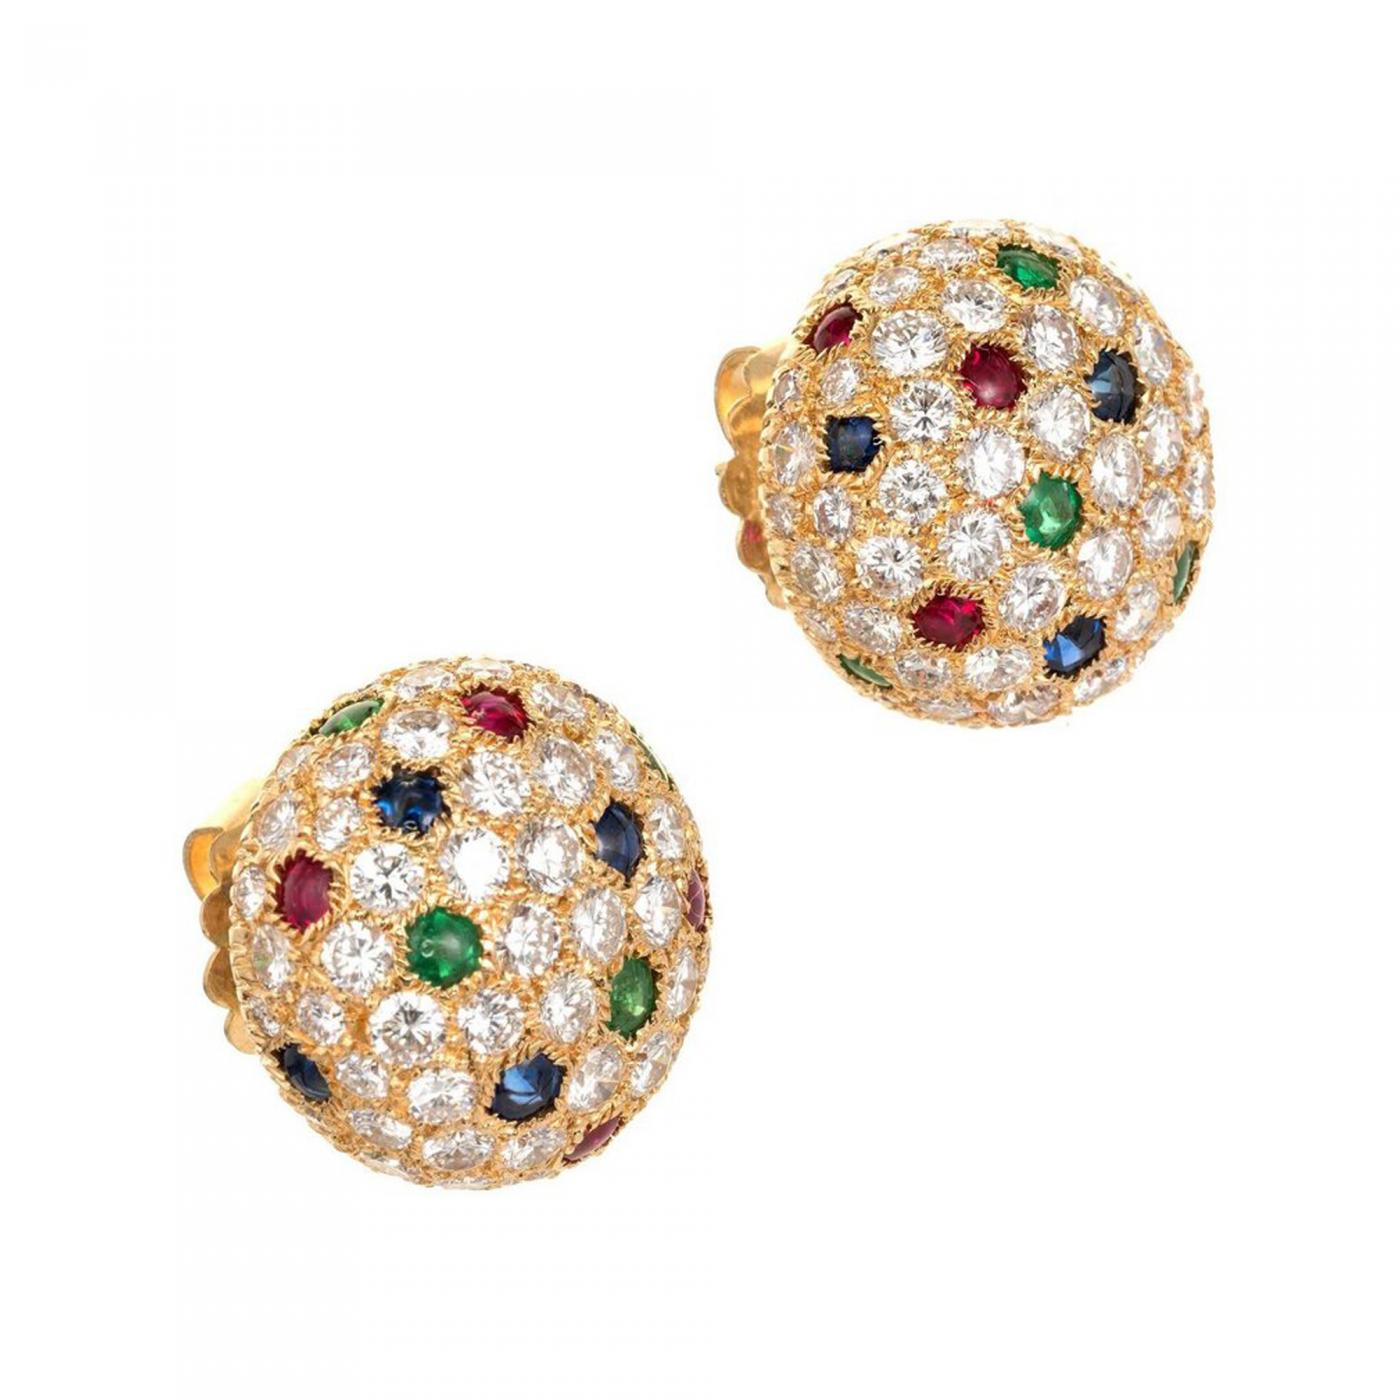 cartier emerald stud earrings